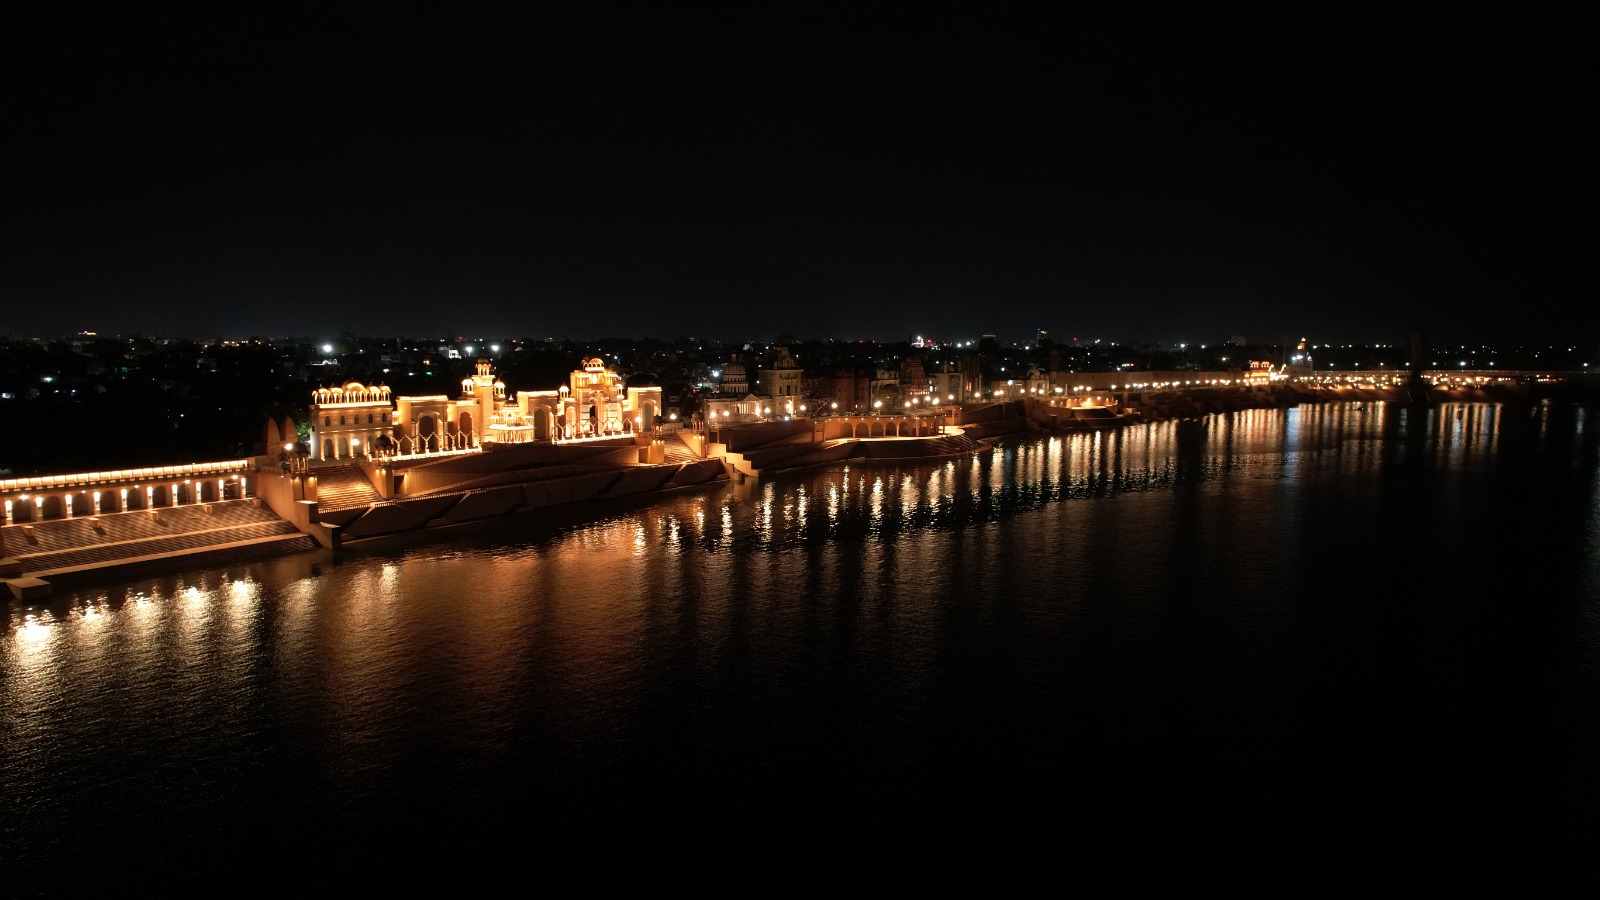 Kota chambal riverfront